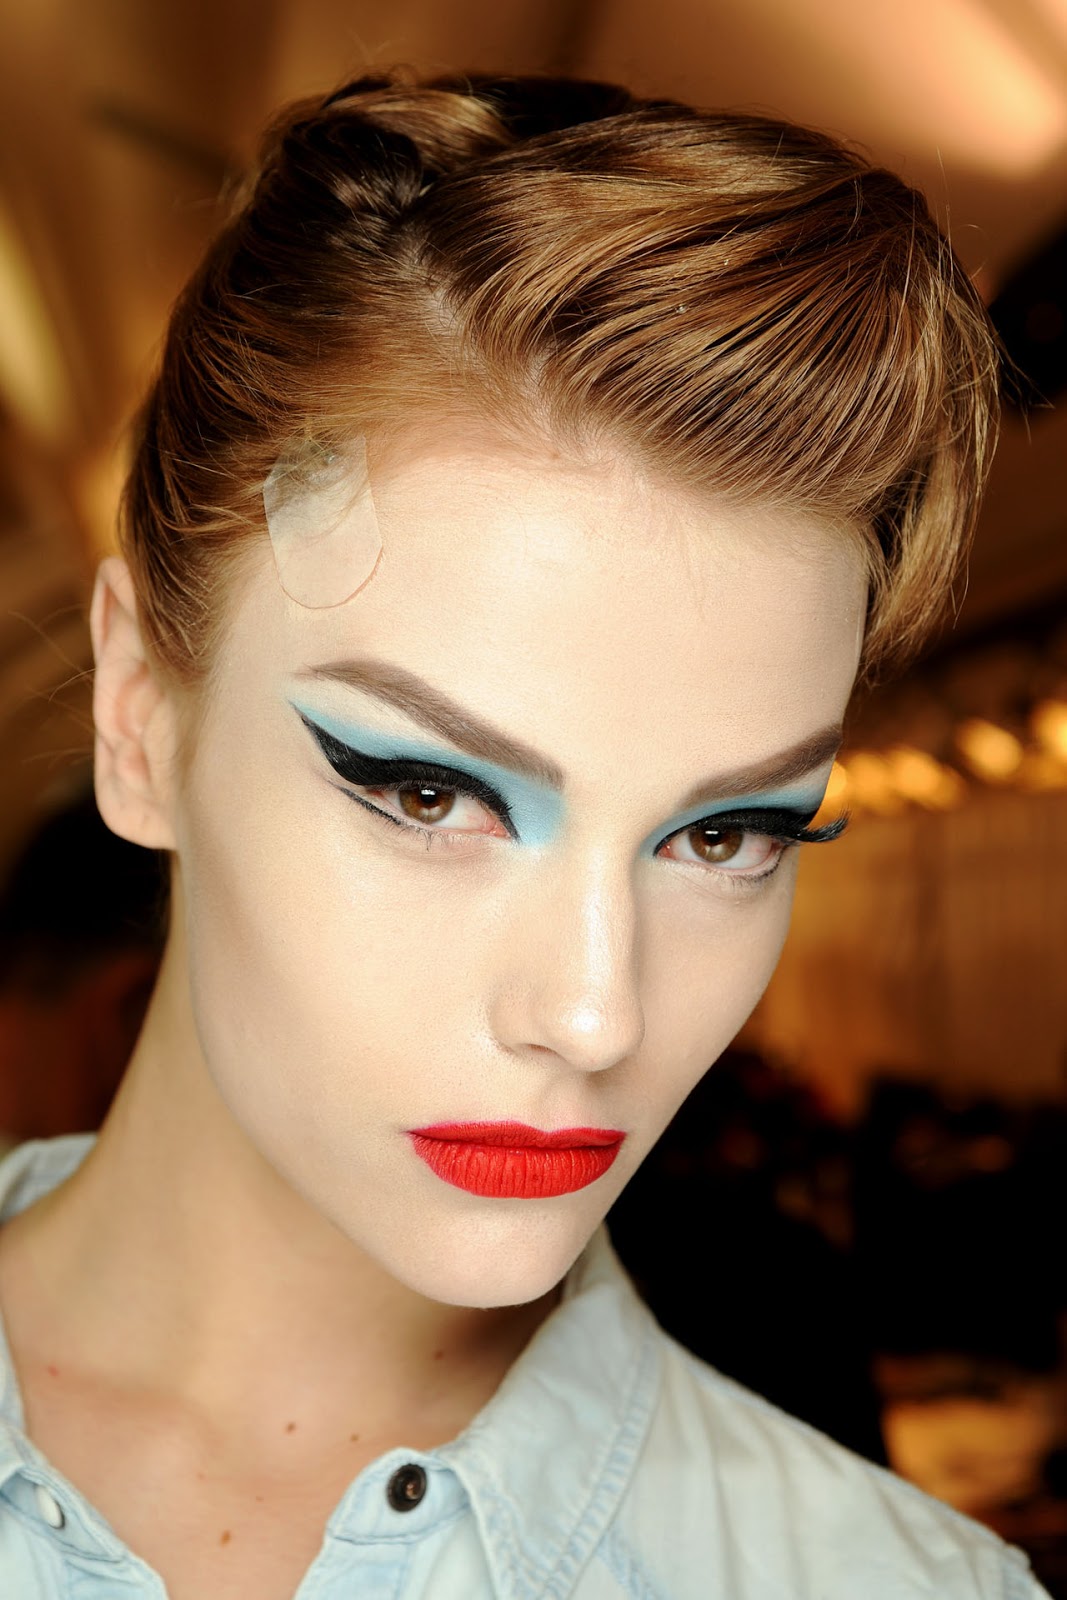 Christian-Dior-Beautiful-Makeup-08.jpg